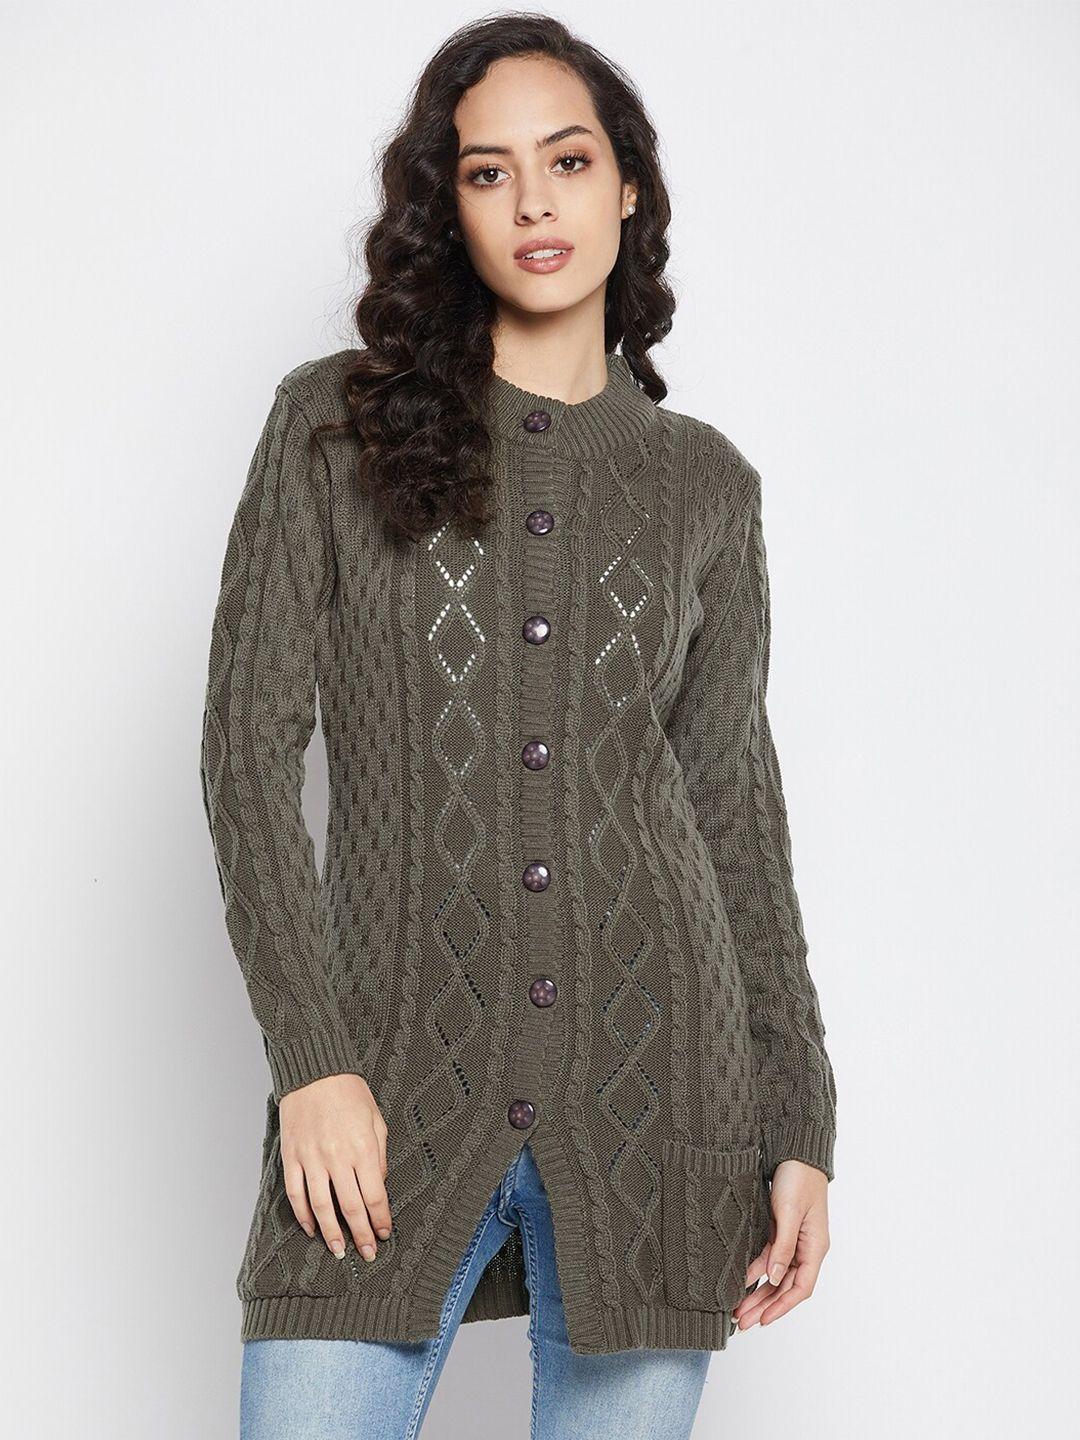 duke women olive green cable knit woolen longline cardigan sweater